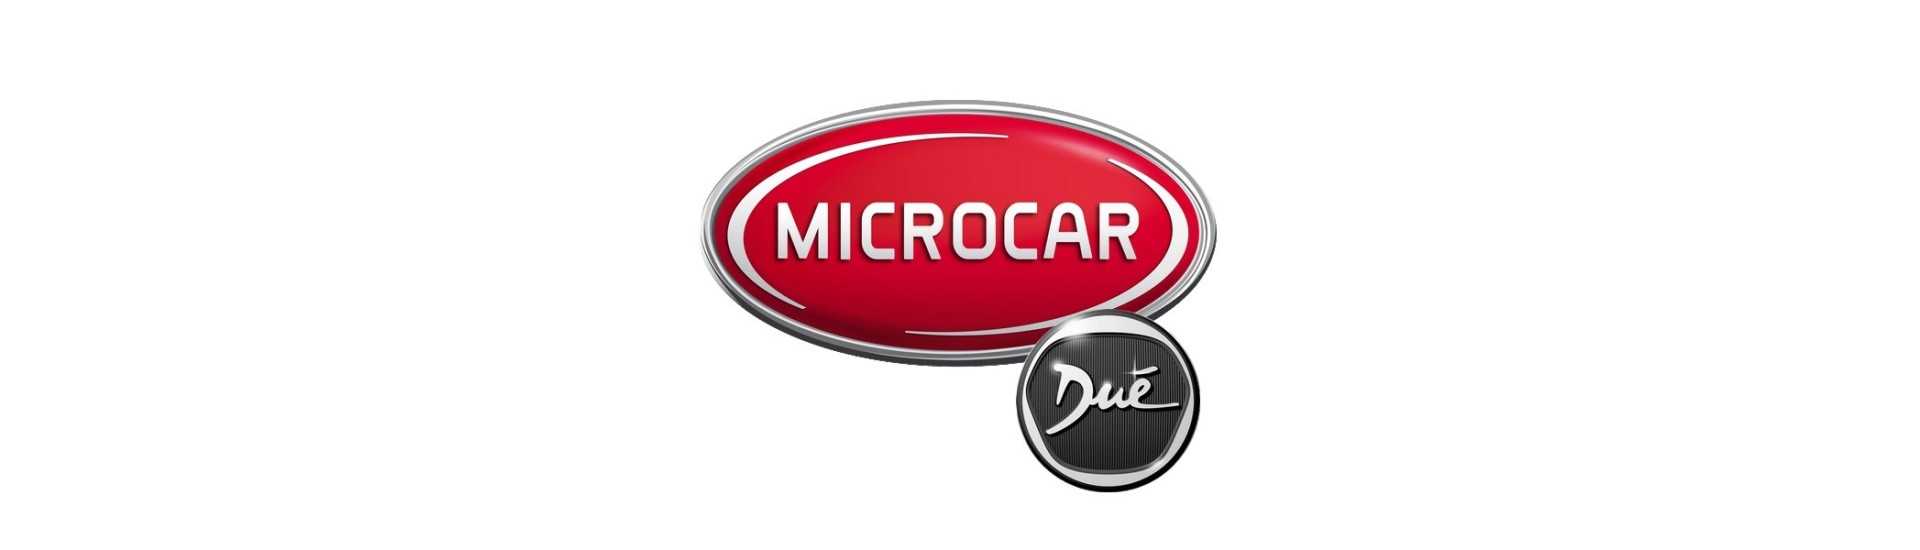 Cerradura de puerta de ropa mejor precio de coche sin permiso Microcar